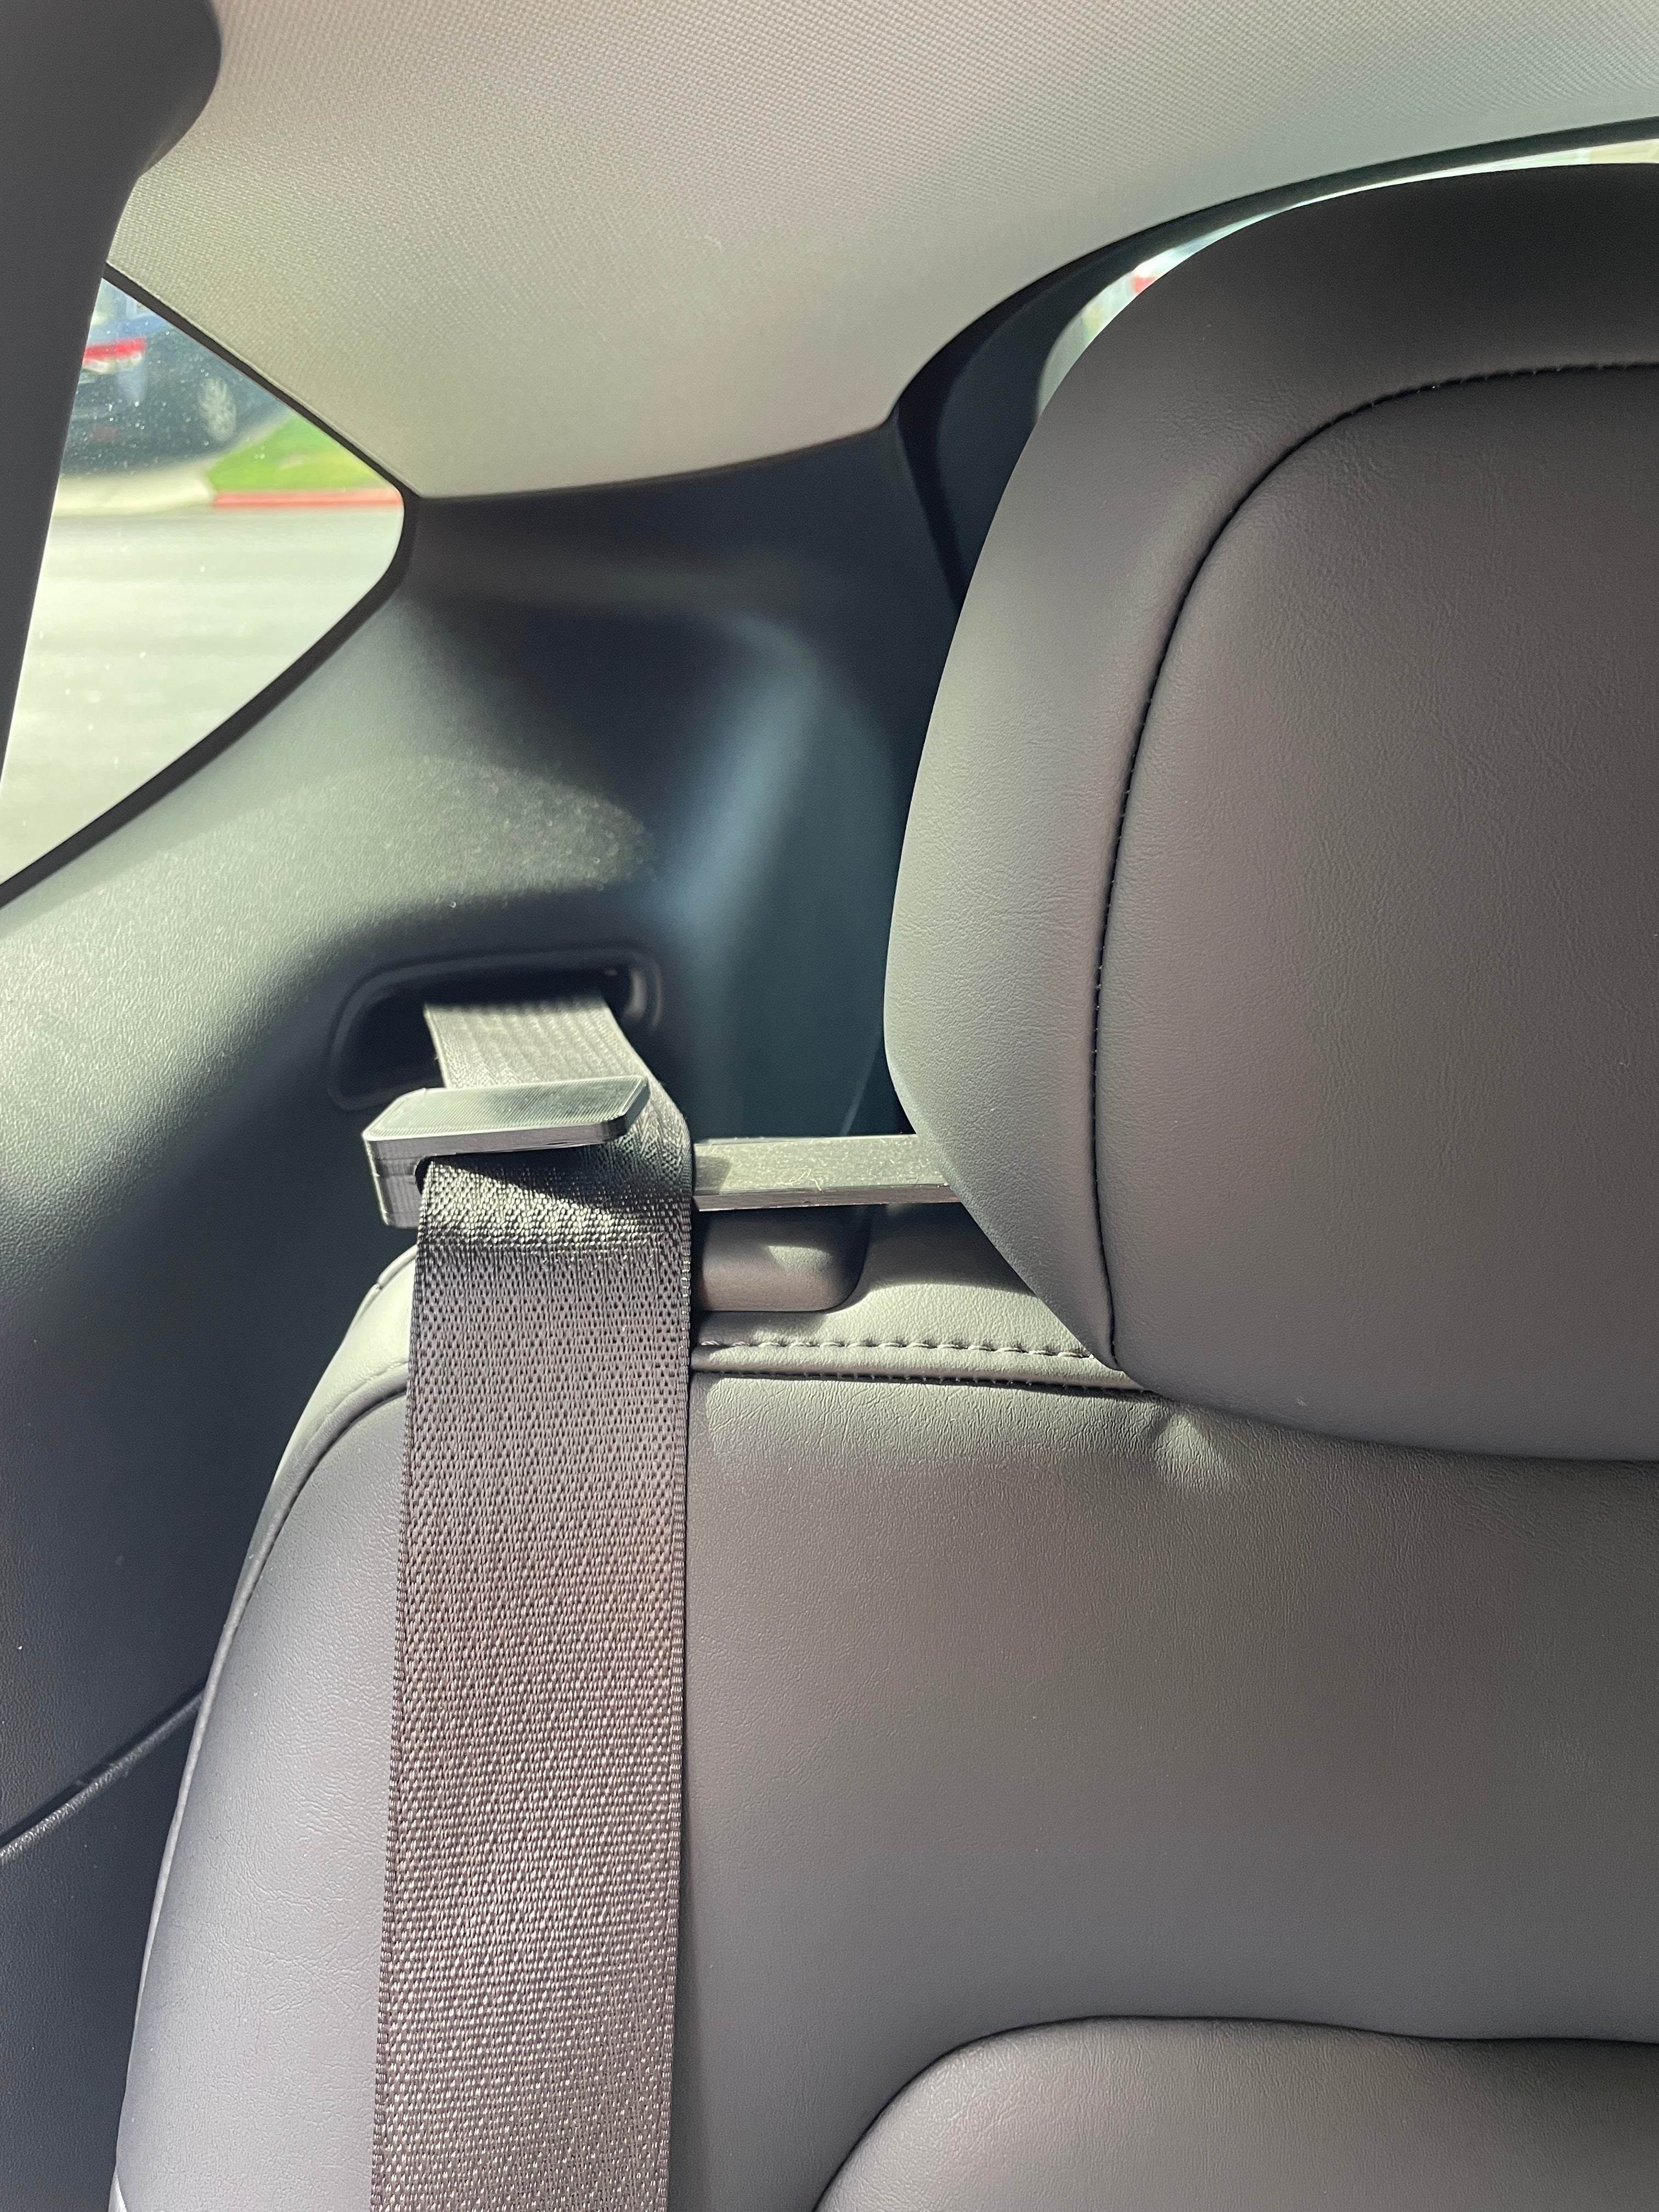 For Tesla Model Y Backseat Seatbelt Guide, Spigen [TO250]